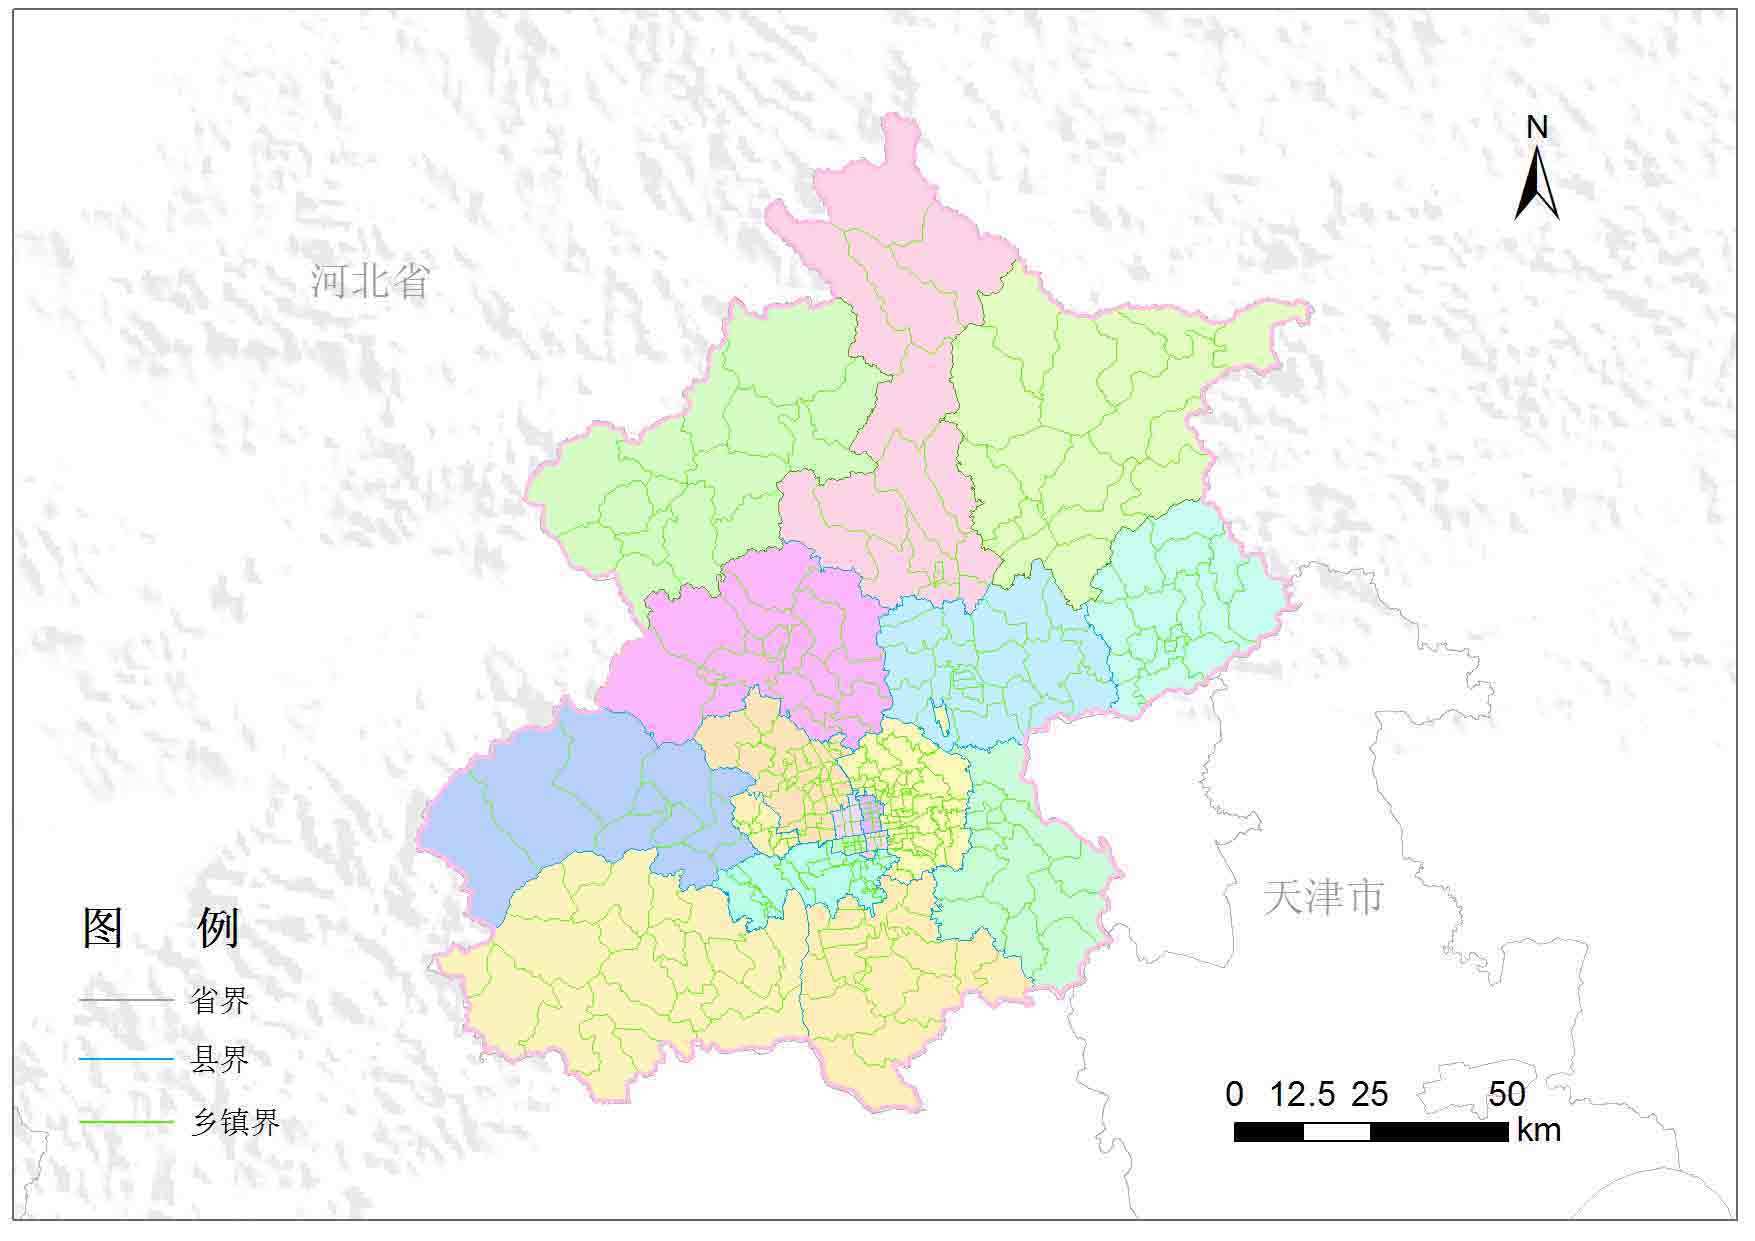 北京地图的比例尺是多少?_学习帮助_奇飞知识网